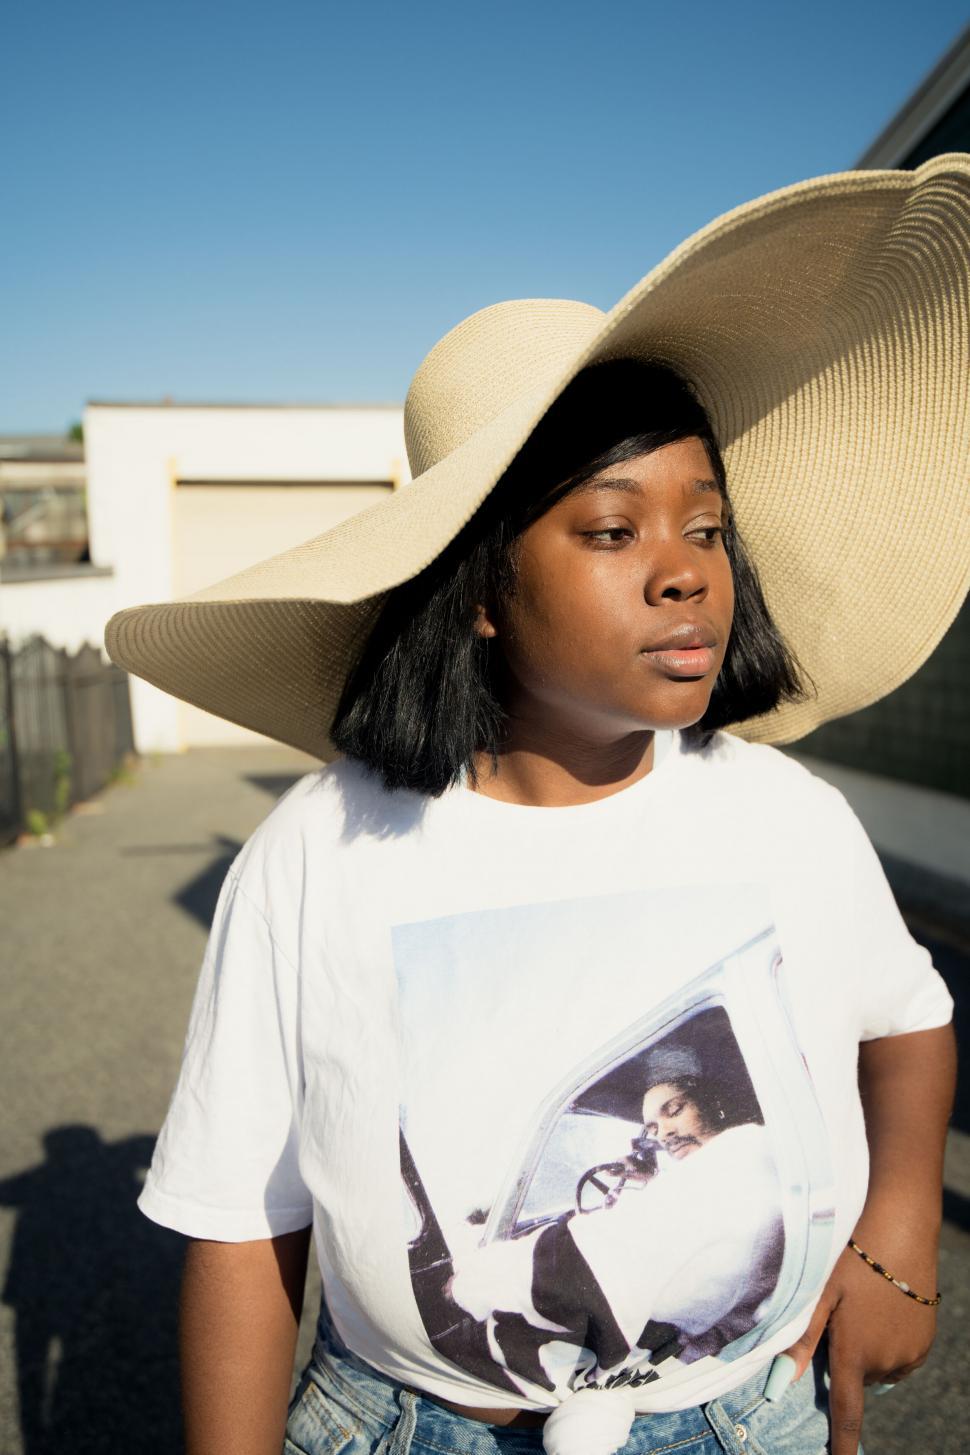 Free Image of Stylish woman wearing a large sun hat 